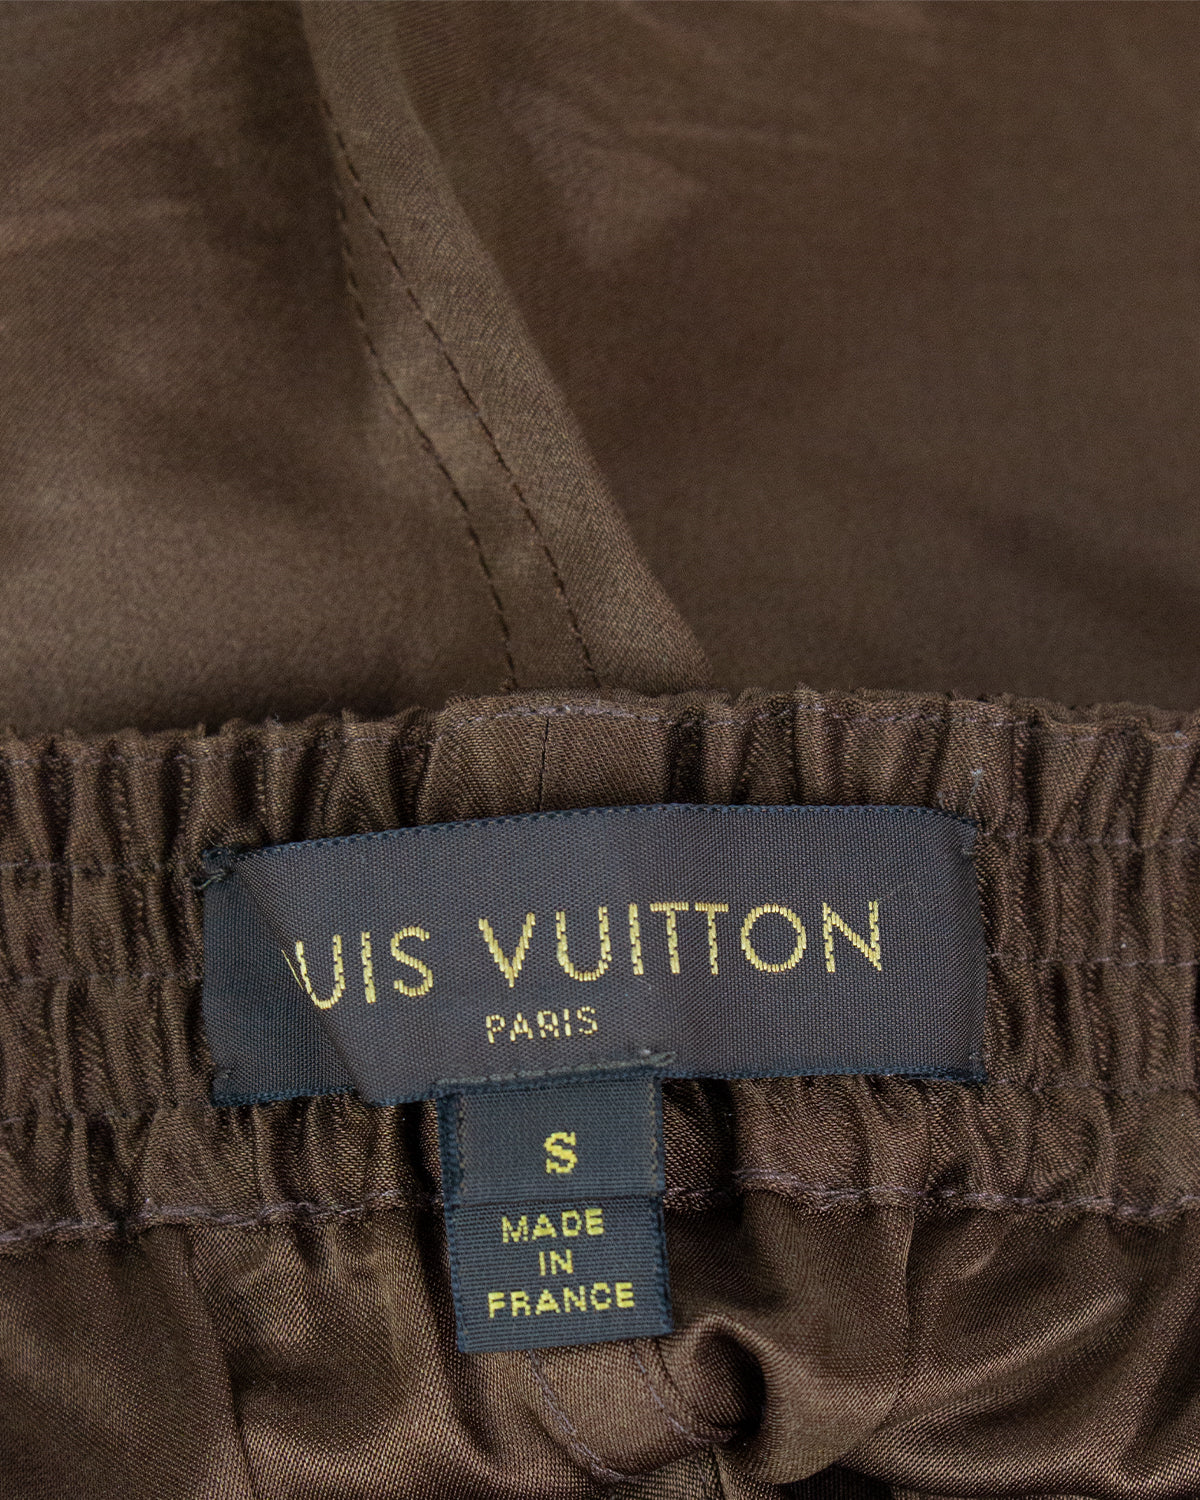 Louis Vuitton Script Grey T Shirt. Size S.